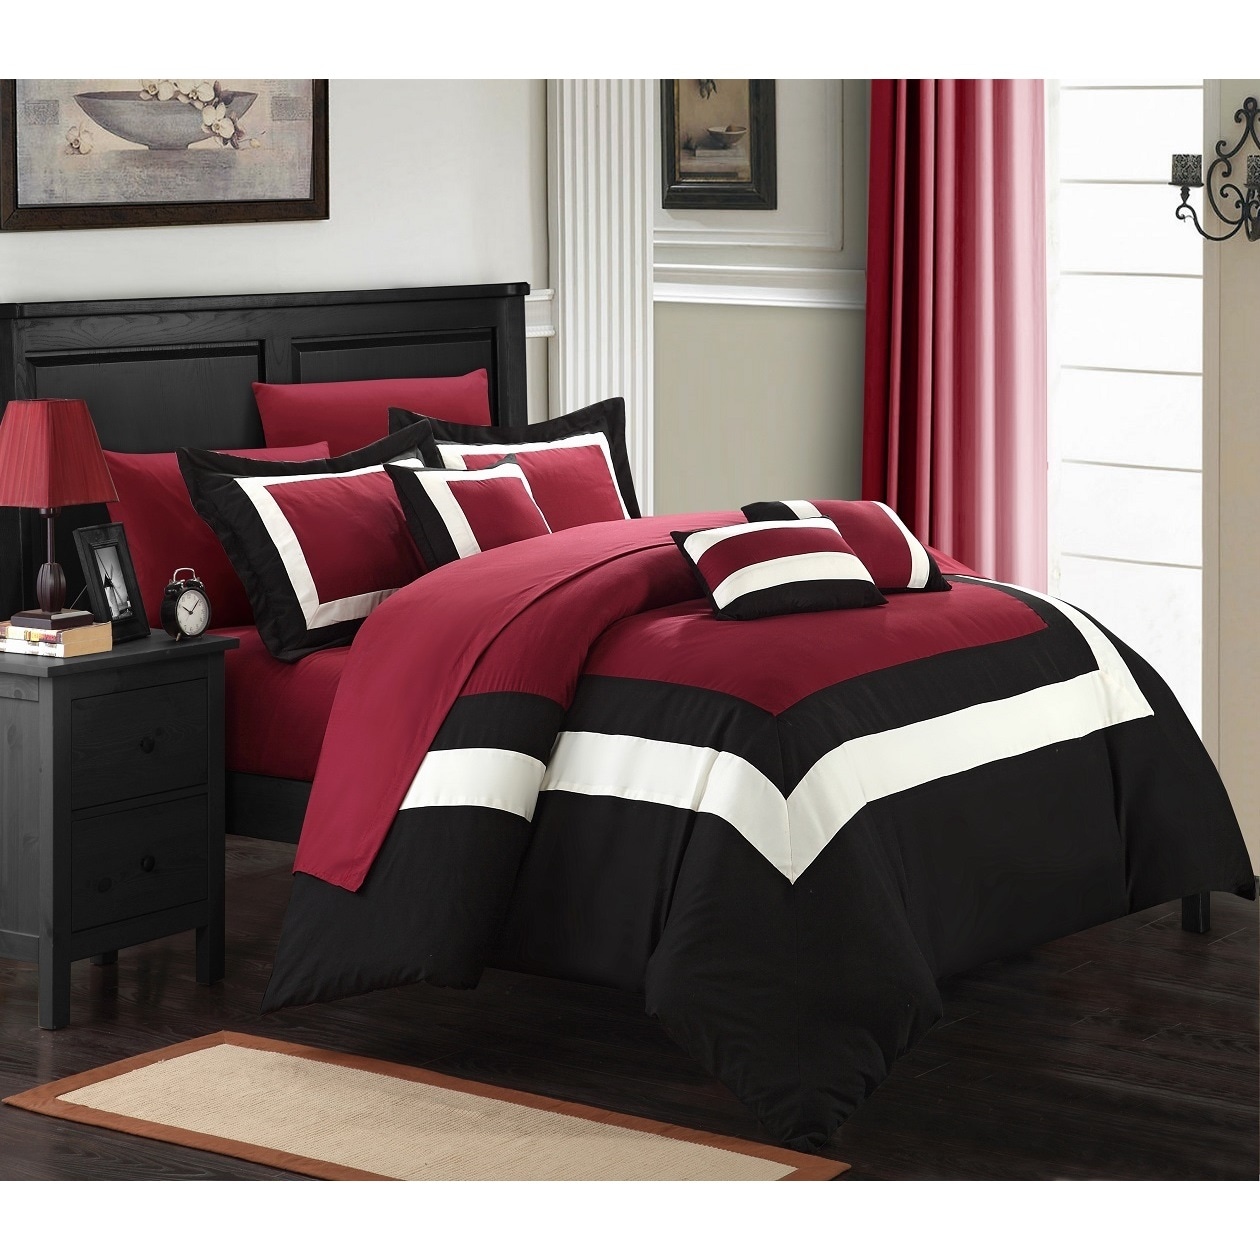 black bed set